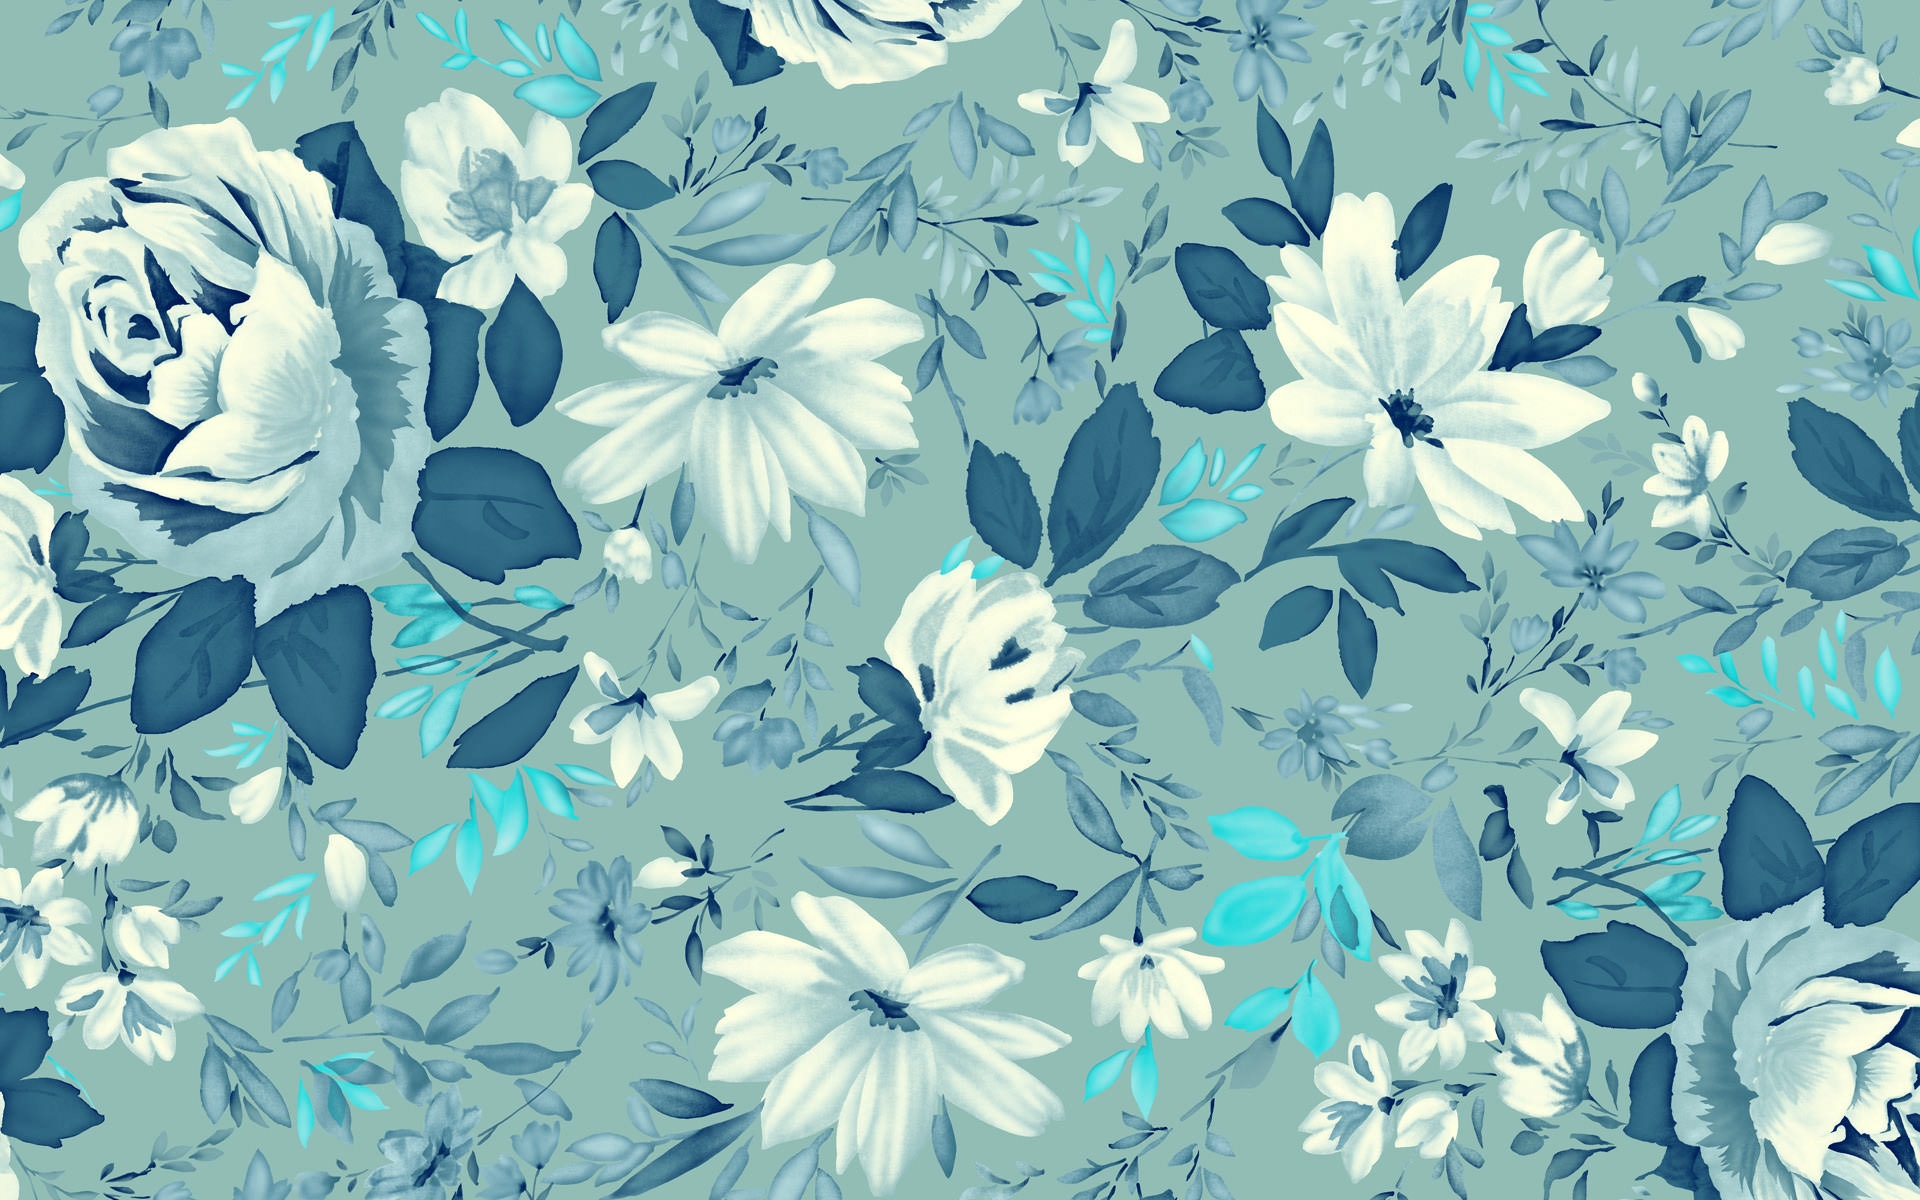 꽃 패턴 벽지,푸른,아쿠아,무늬,터키 옥,디자인